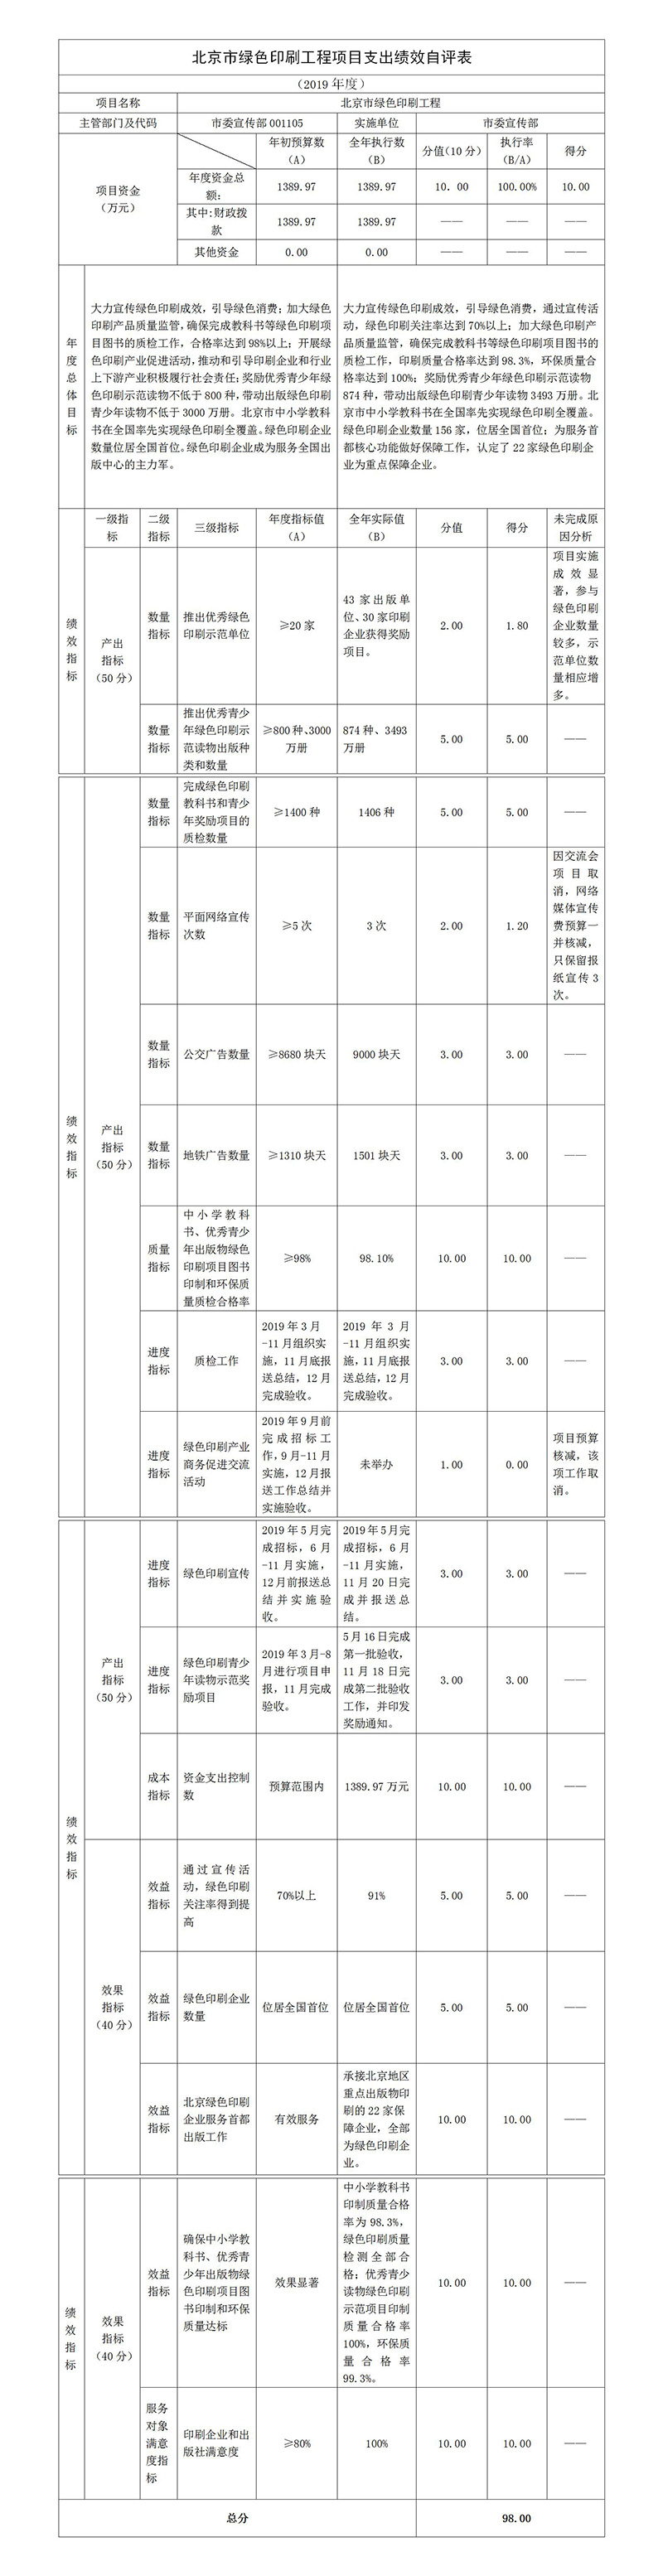 北京市綠色印刷工程項目支出績效自評表.jpg